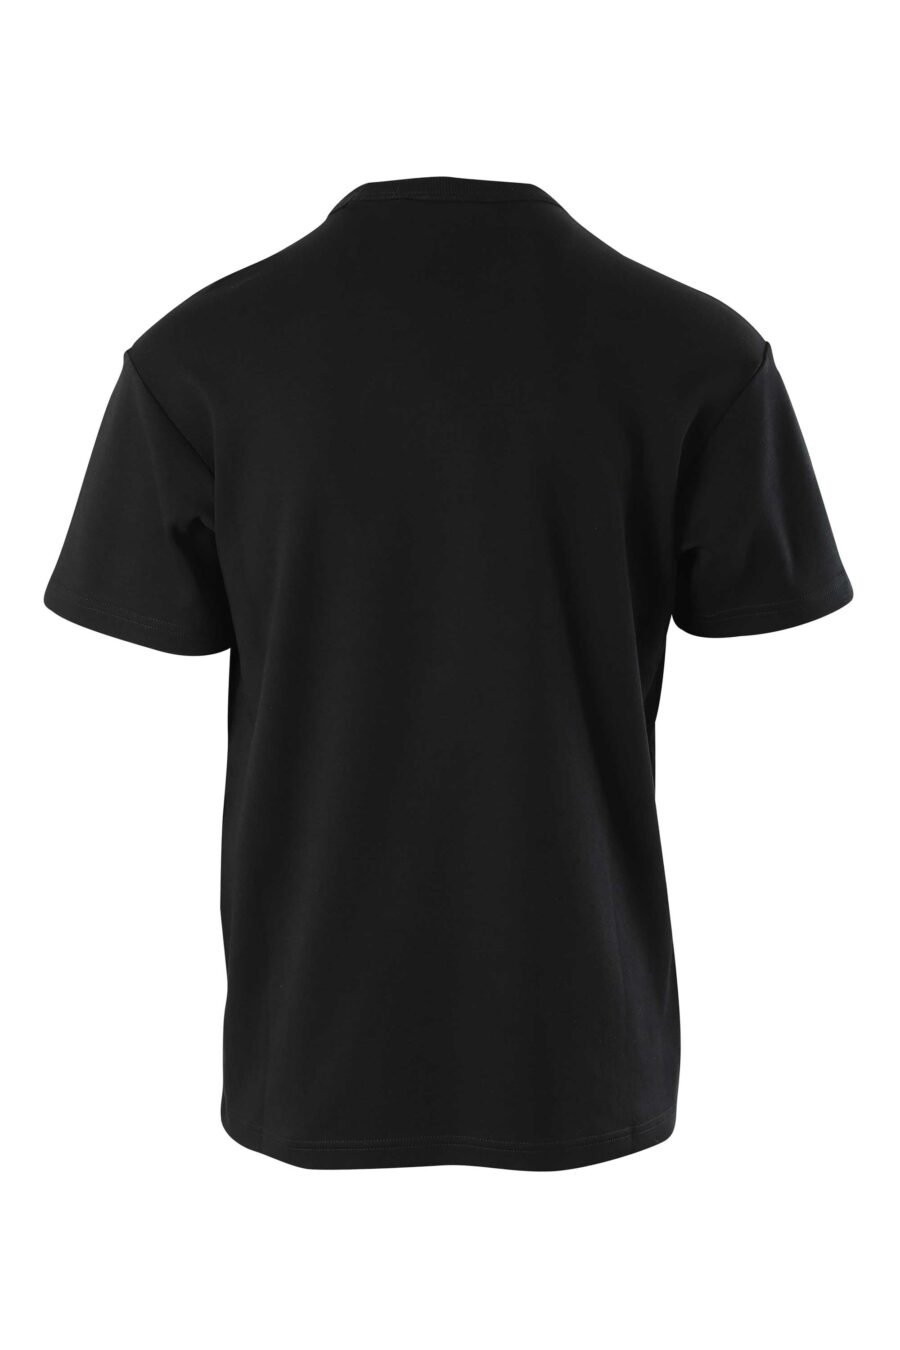 Camiseta negra con logo multicolor centrado - 8052019322125 2